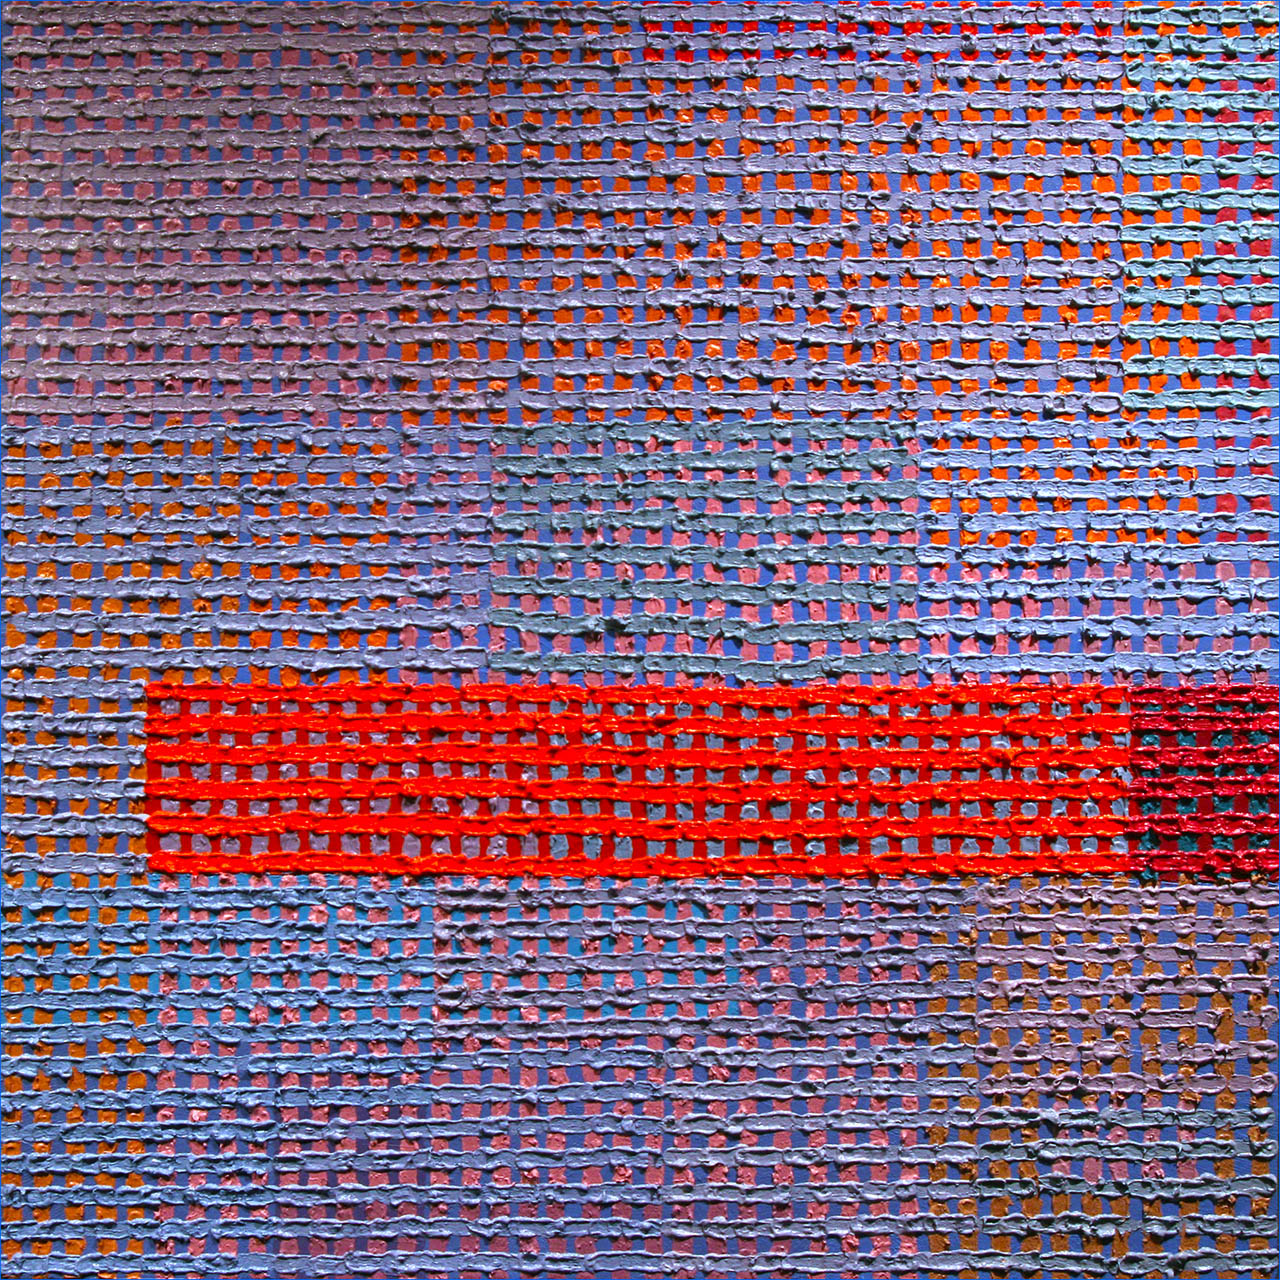 "Dusk", 2017, oil on canvas, 16" x 16"